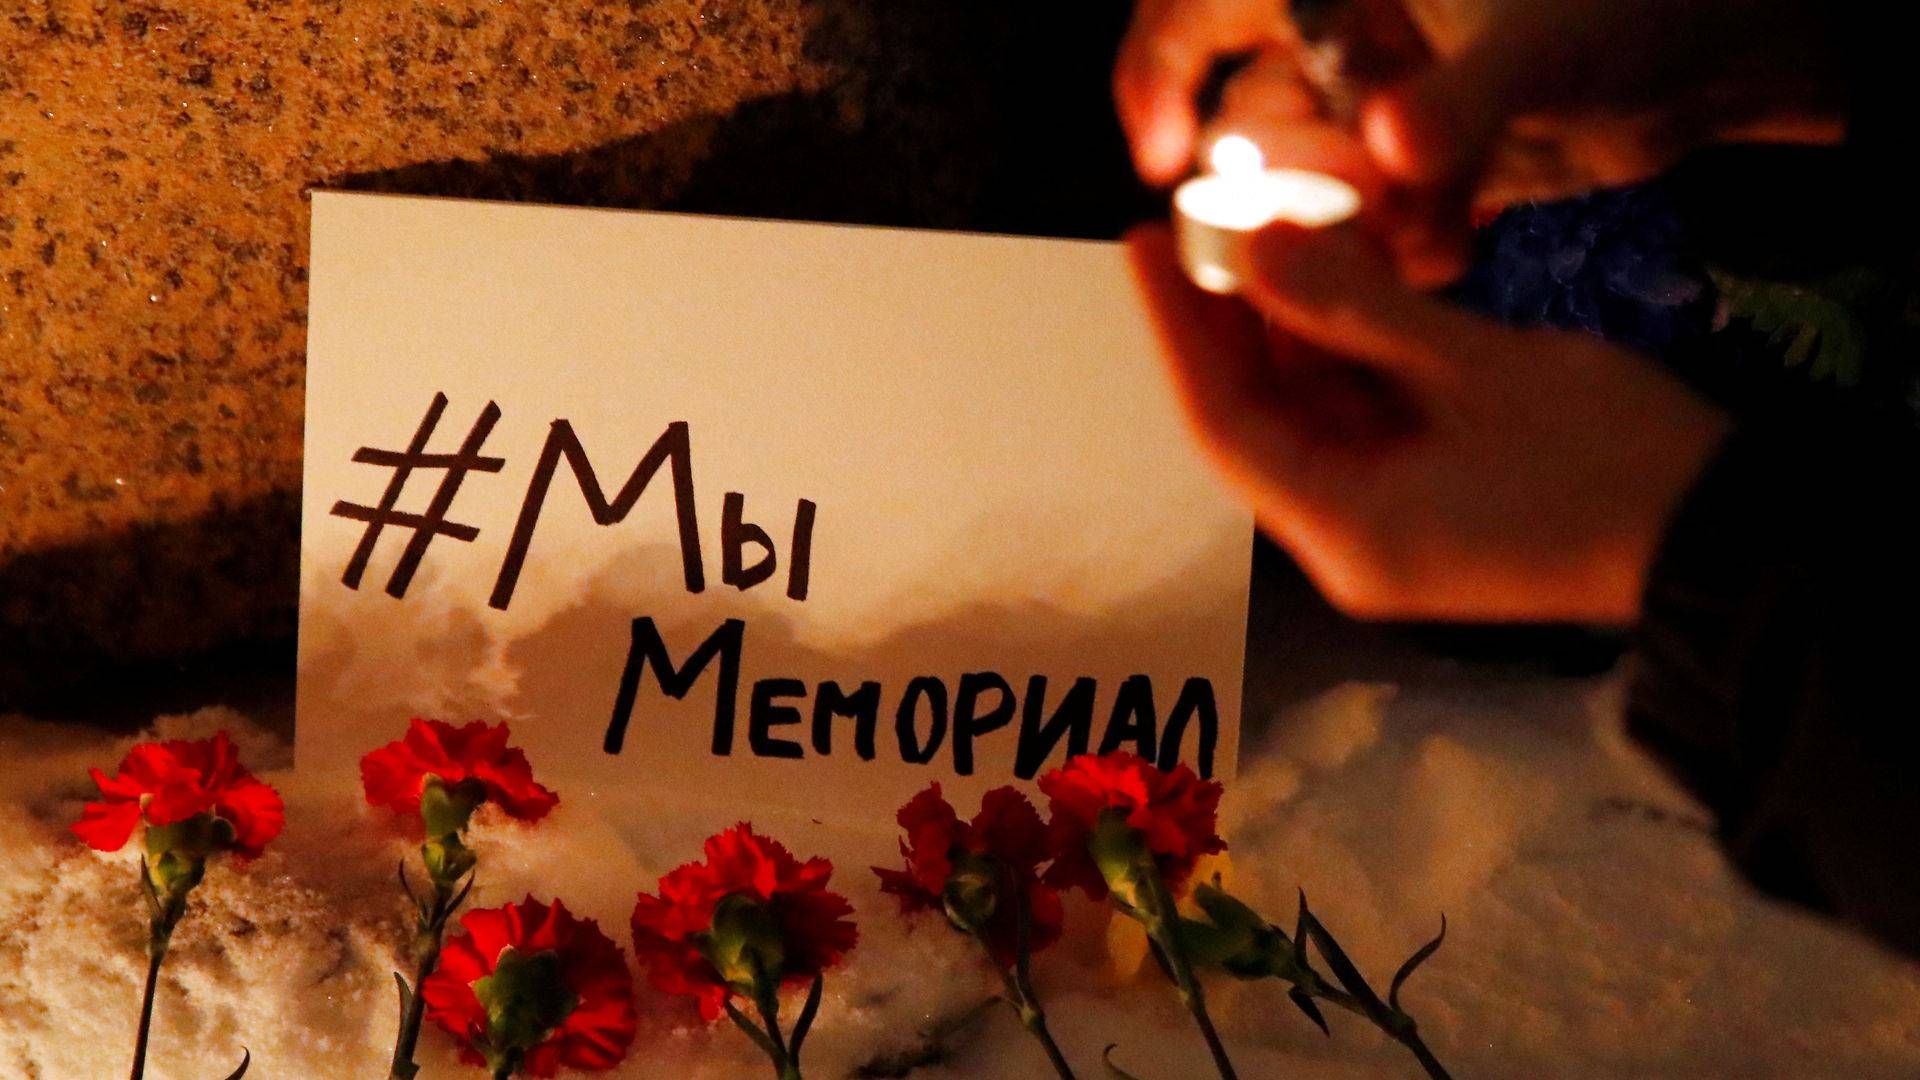 Tirsdag aften tænder Memorials støtter lys og lægger blomster ved Solovetskij-stenen i Moskva, der er et mindesmærke for ofrene for politisk undertrykkelse i Sovjetunionen. "#Vi er Memorial", lyder teksten på kortet. | Foto: Anton Vaganov/Reuters/Ritzau Scanpix